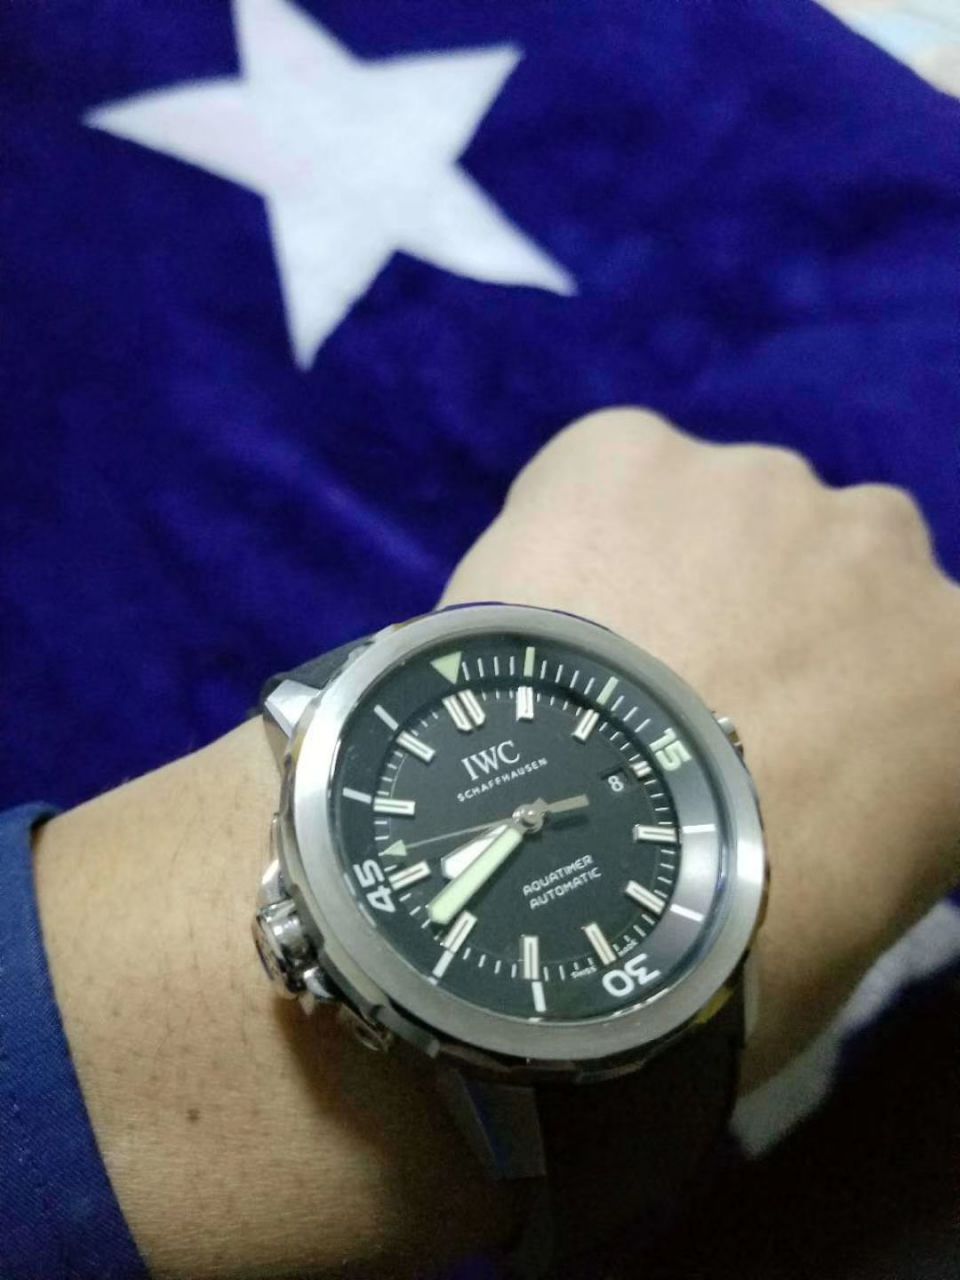 【视频评测V6厂蓝色字面完美升级】万国海洋时计1比1顶级复刻手表IW329005腕表 / WG606